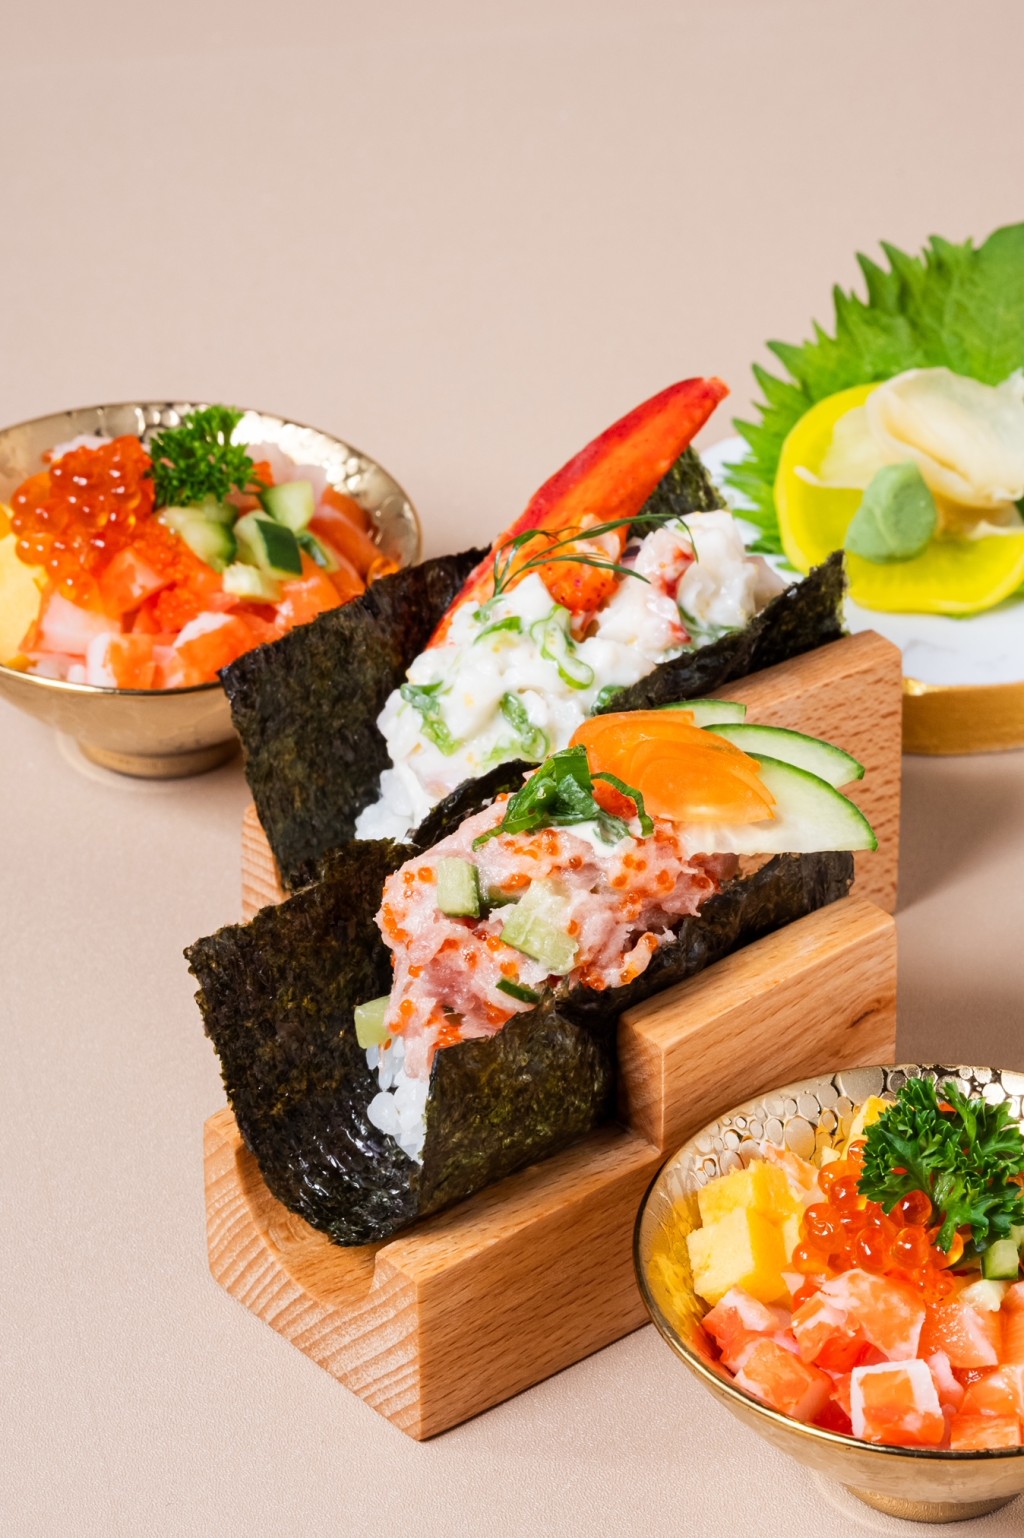 帝都酒店 柏麗廳——即製壽司—打開了的手卷壽司包着和風沙律，另有精緻小巧的迷你刺身飯，豐腴美味。